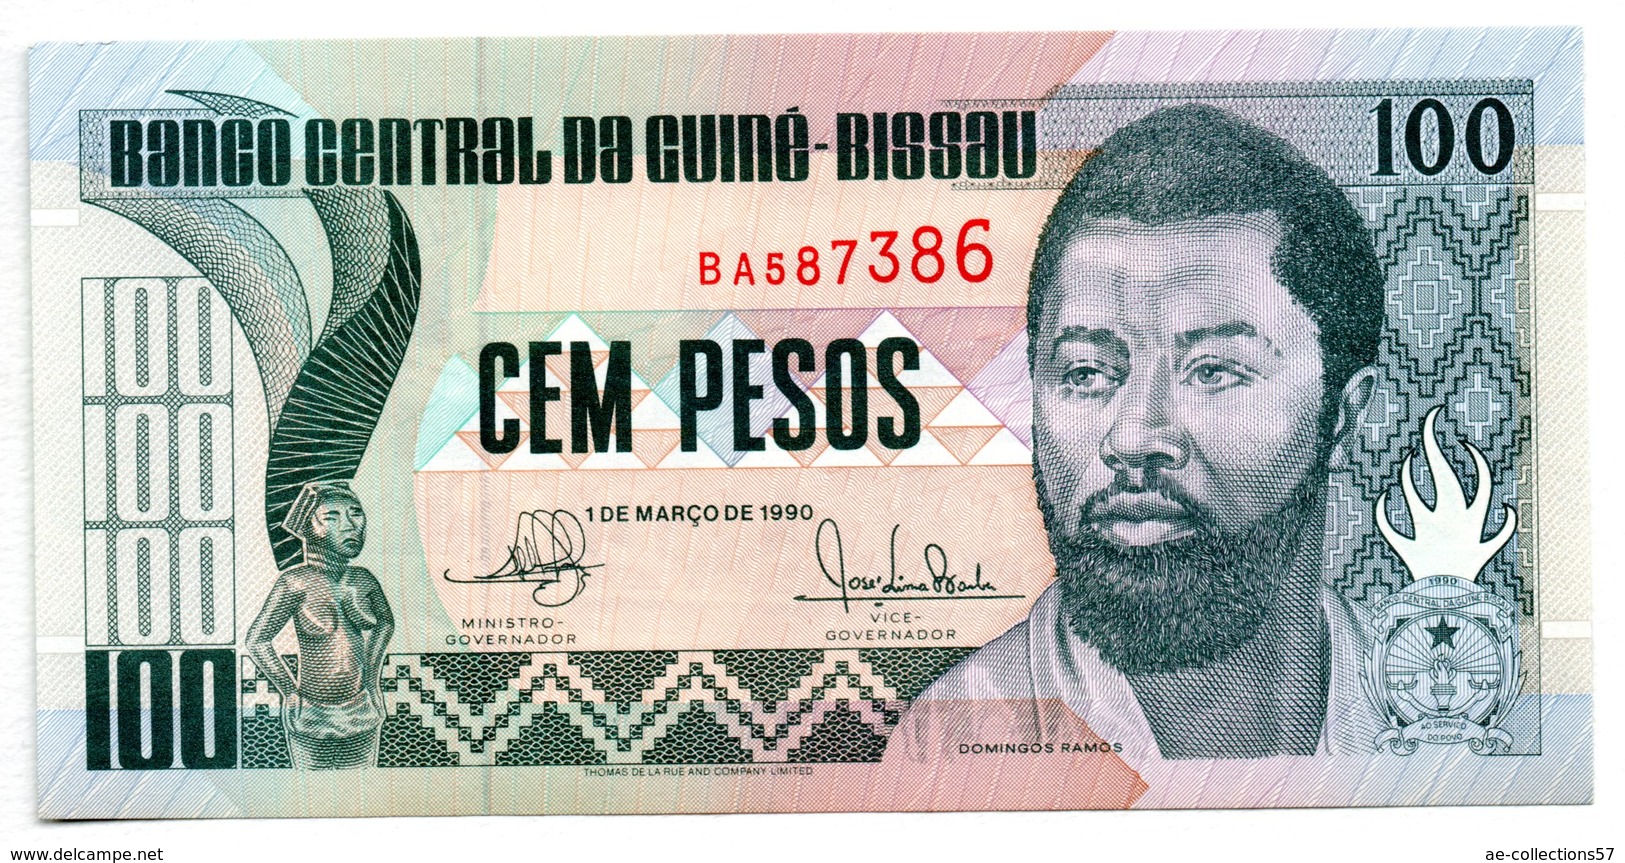 Dinero en Guinea-Bissau